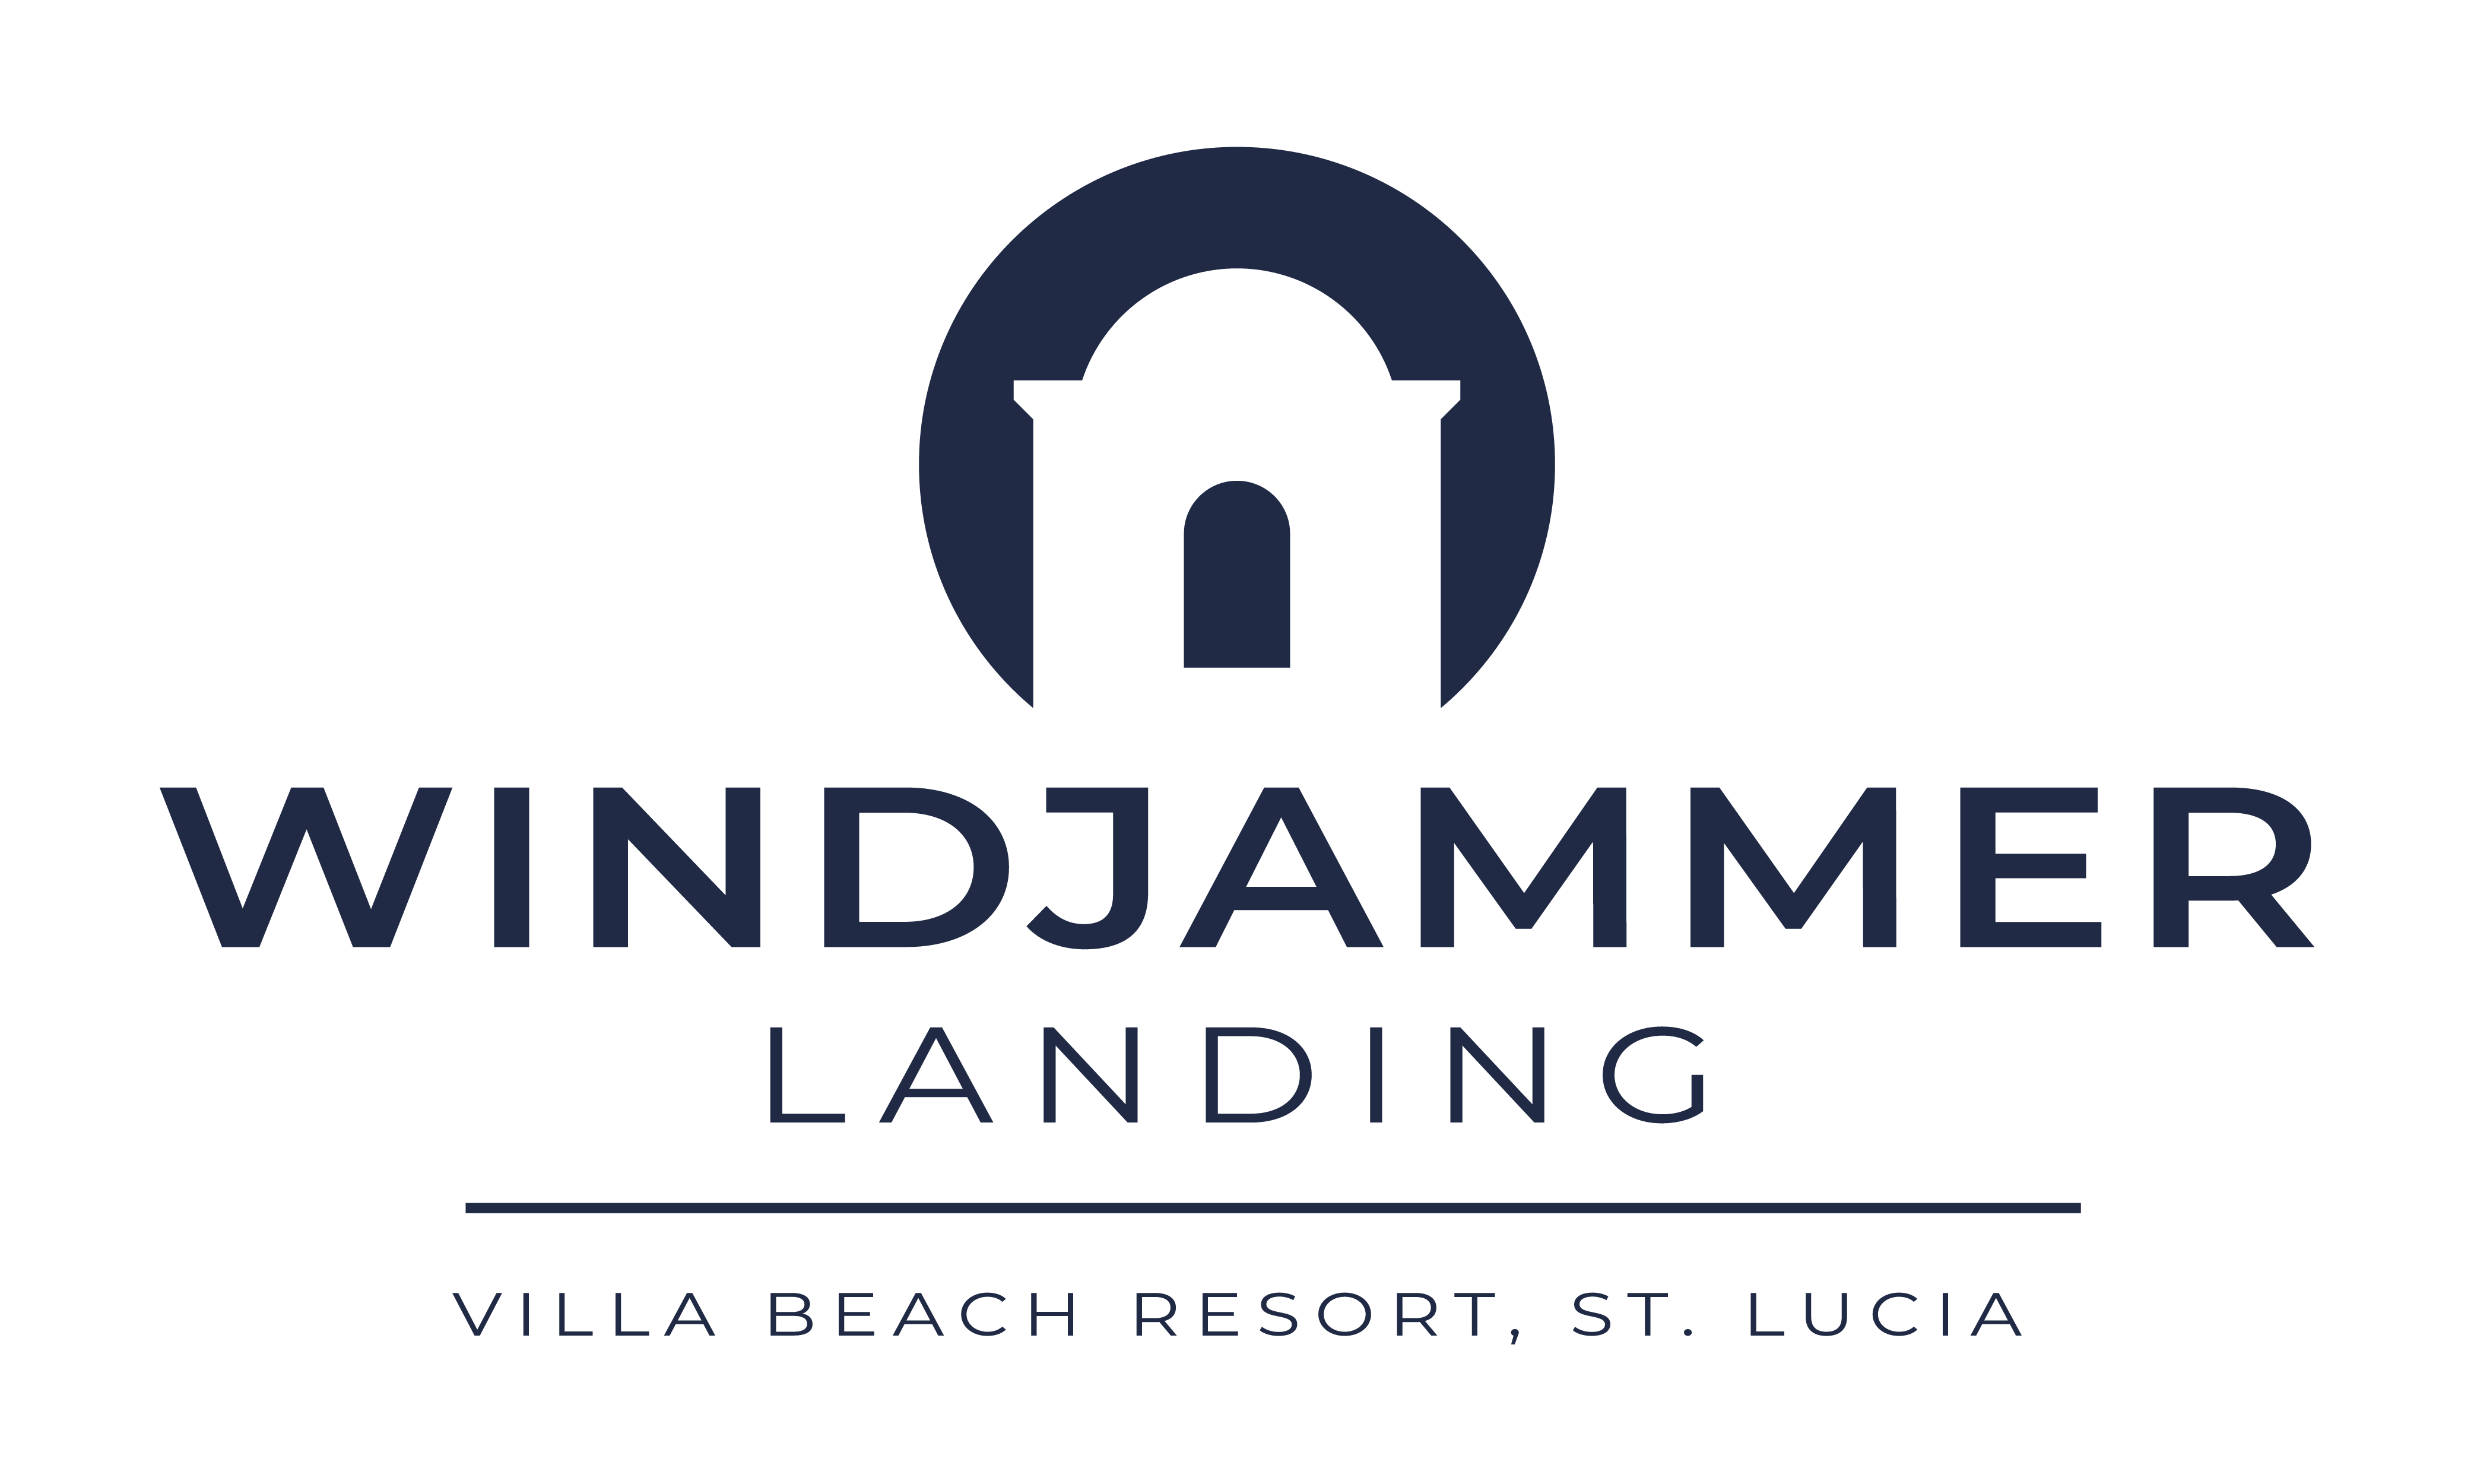 Windjammer Landing Villa Beach Resort Dark Logo